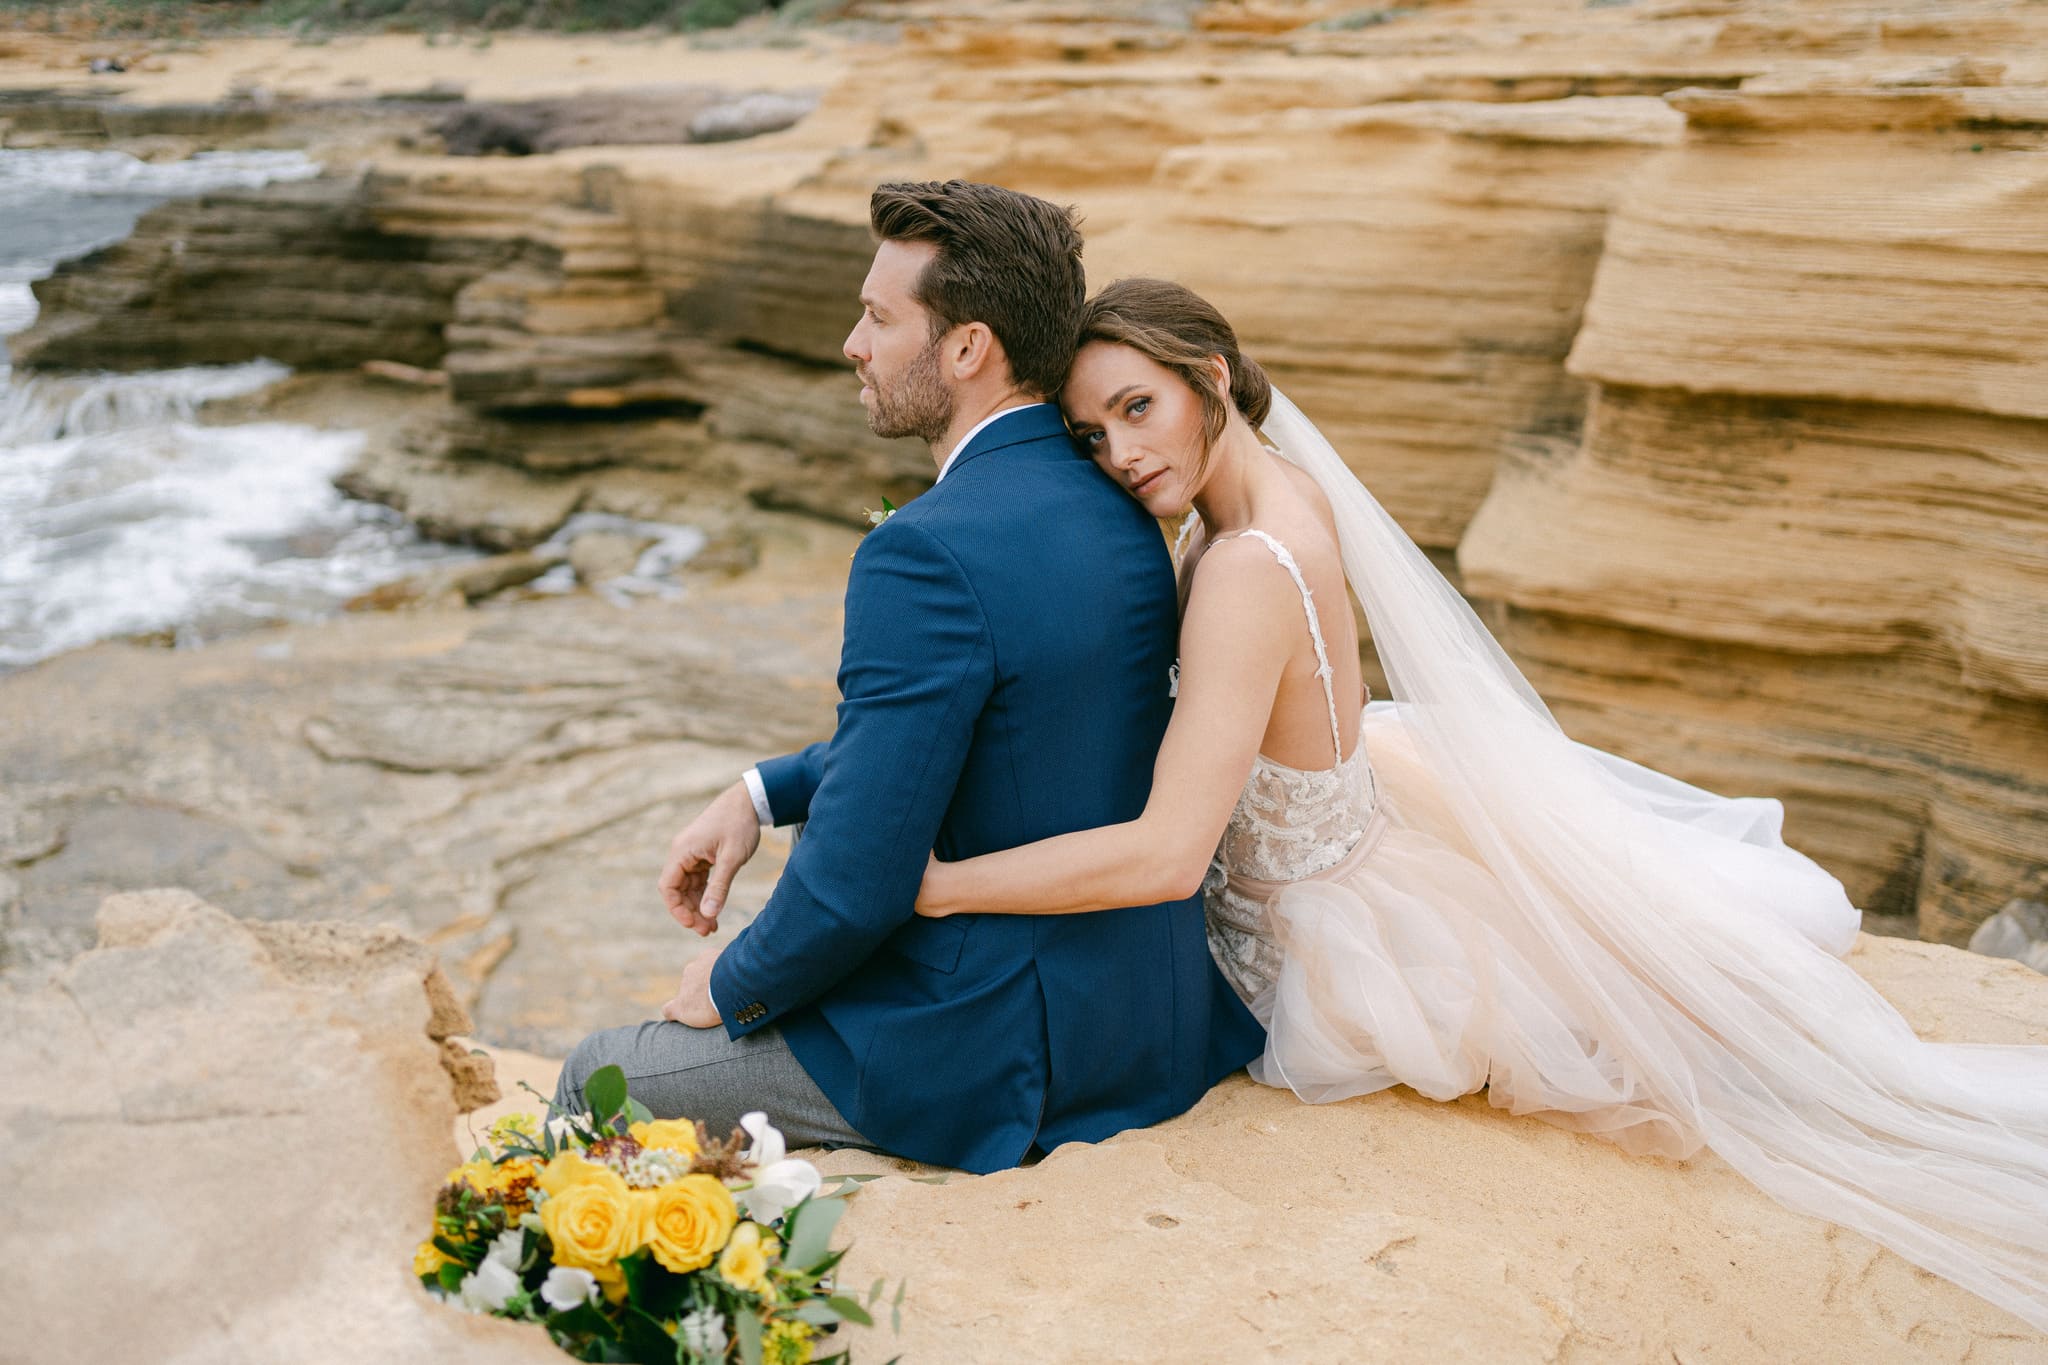 Romantische Szene eines frisch verheirateten Paares, das auf einem felsigen Strand sitzt, die Braut lehnt sich an den Bräutigam, beide betrachten die Wellen, inmitten einer atemberaubenden Küstenlandschaft.